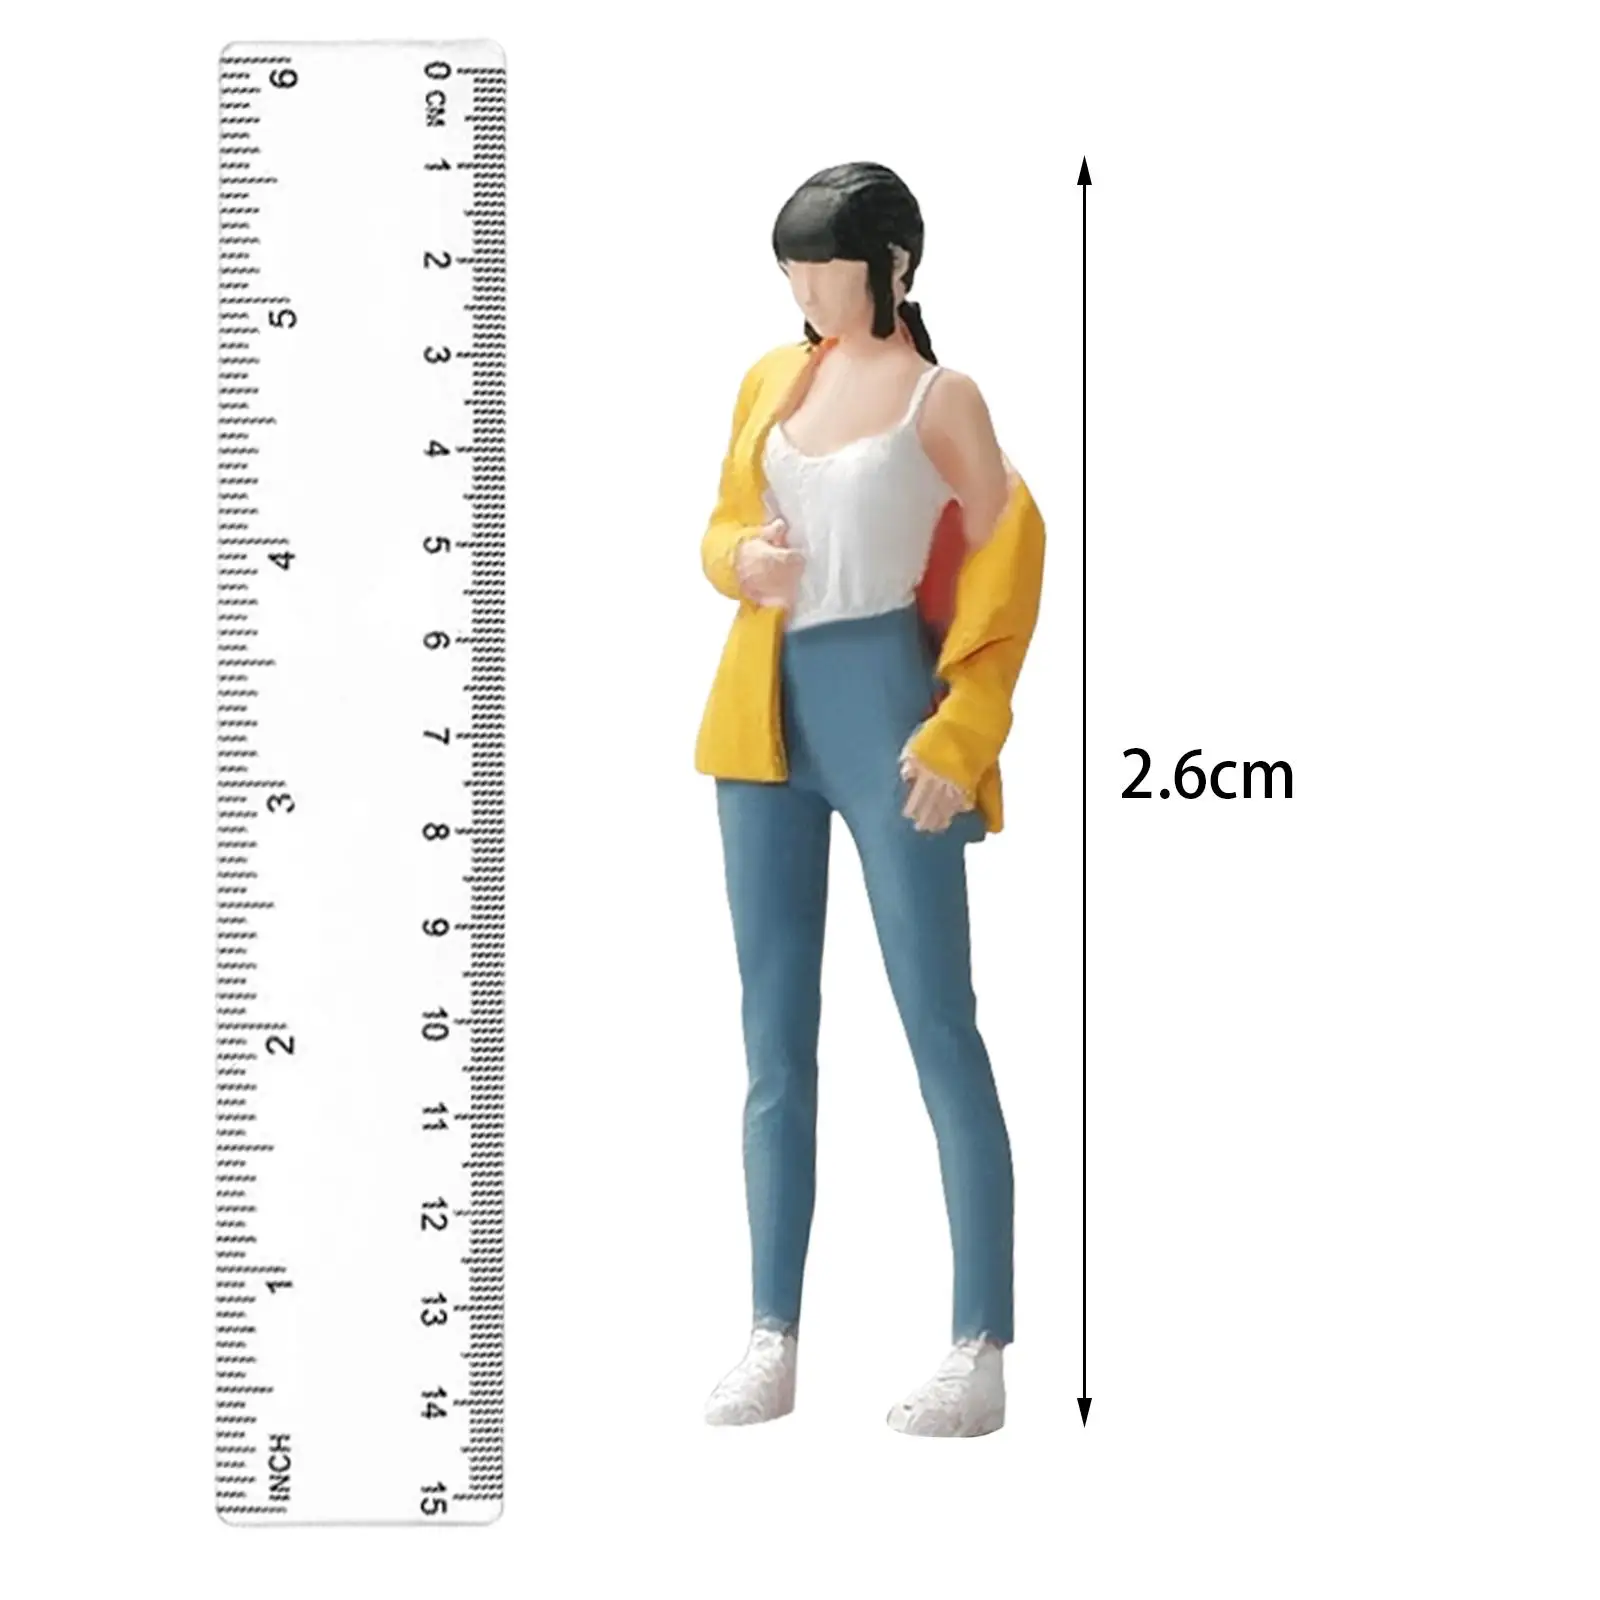 1/64 Girl Figure Pose Scene Movie Props Miniature People Model Resin Figures Micro Landscapes Decor Miniature Scenes Decor